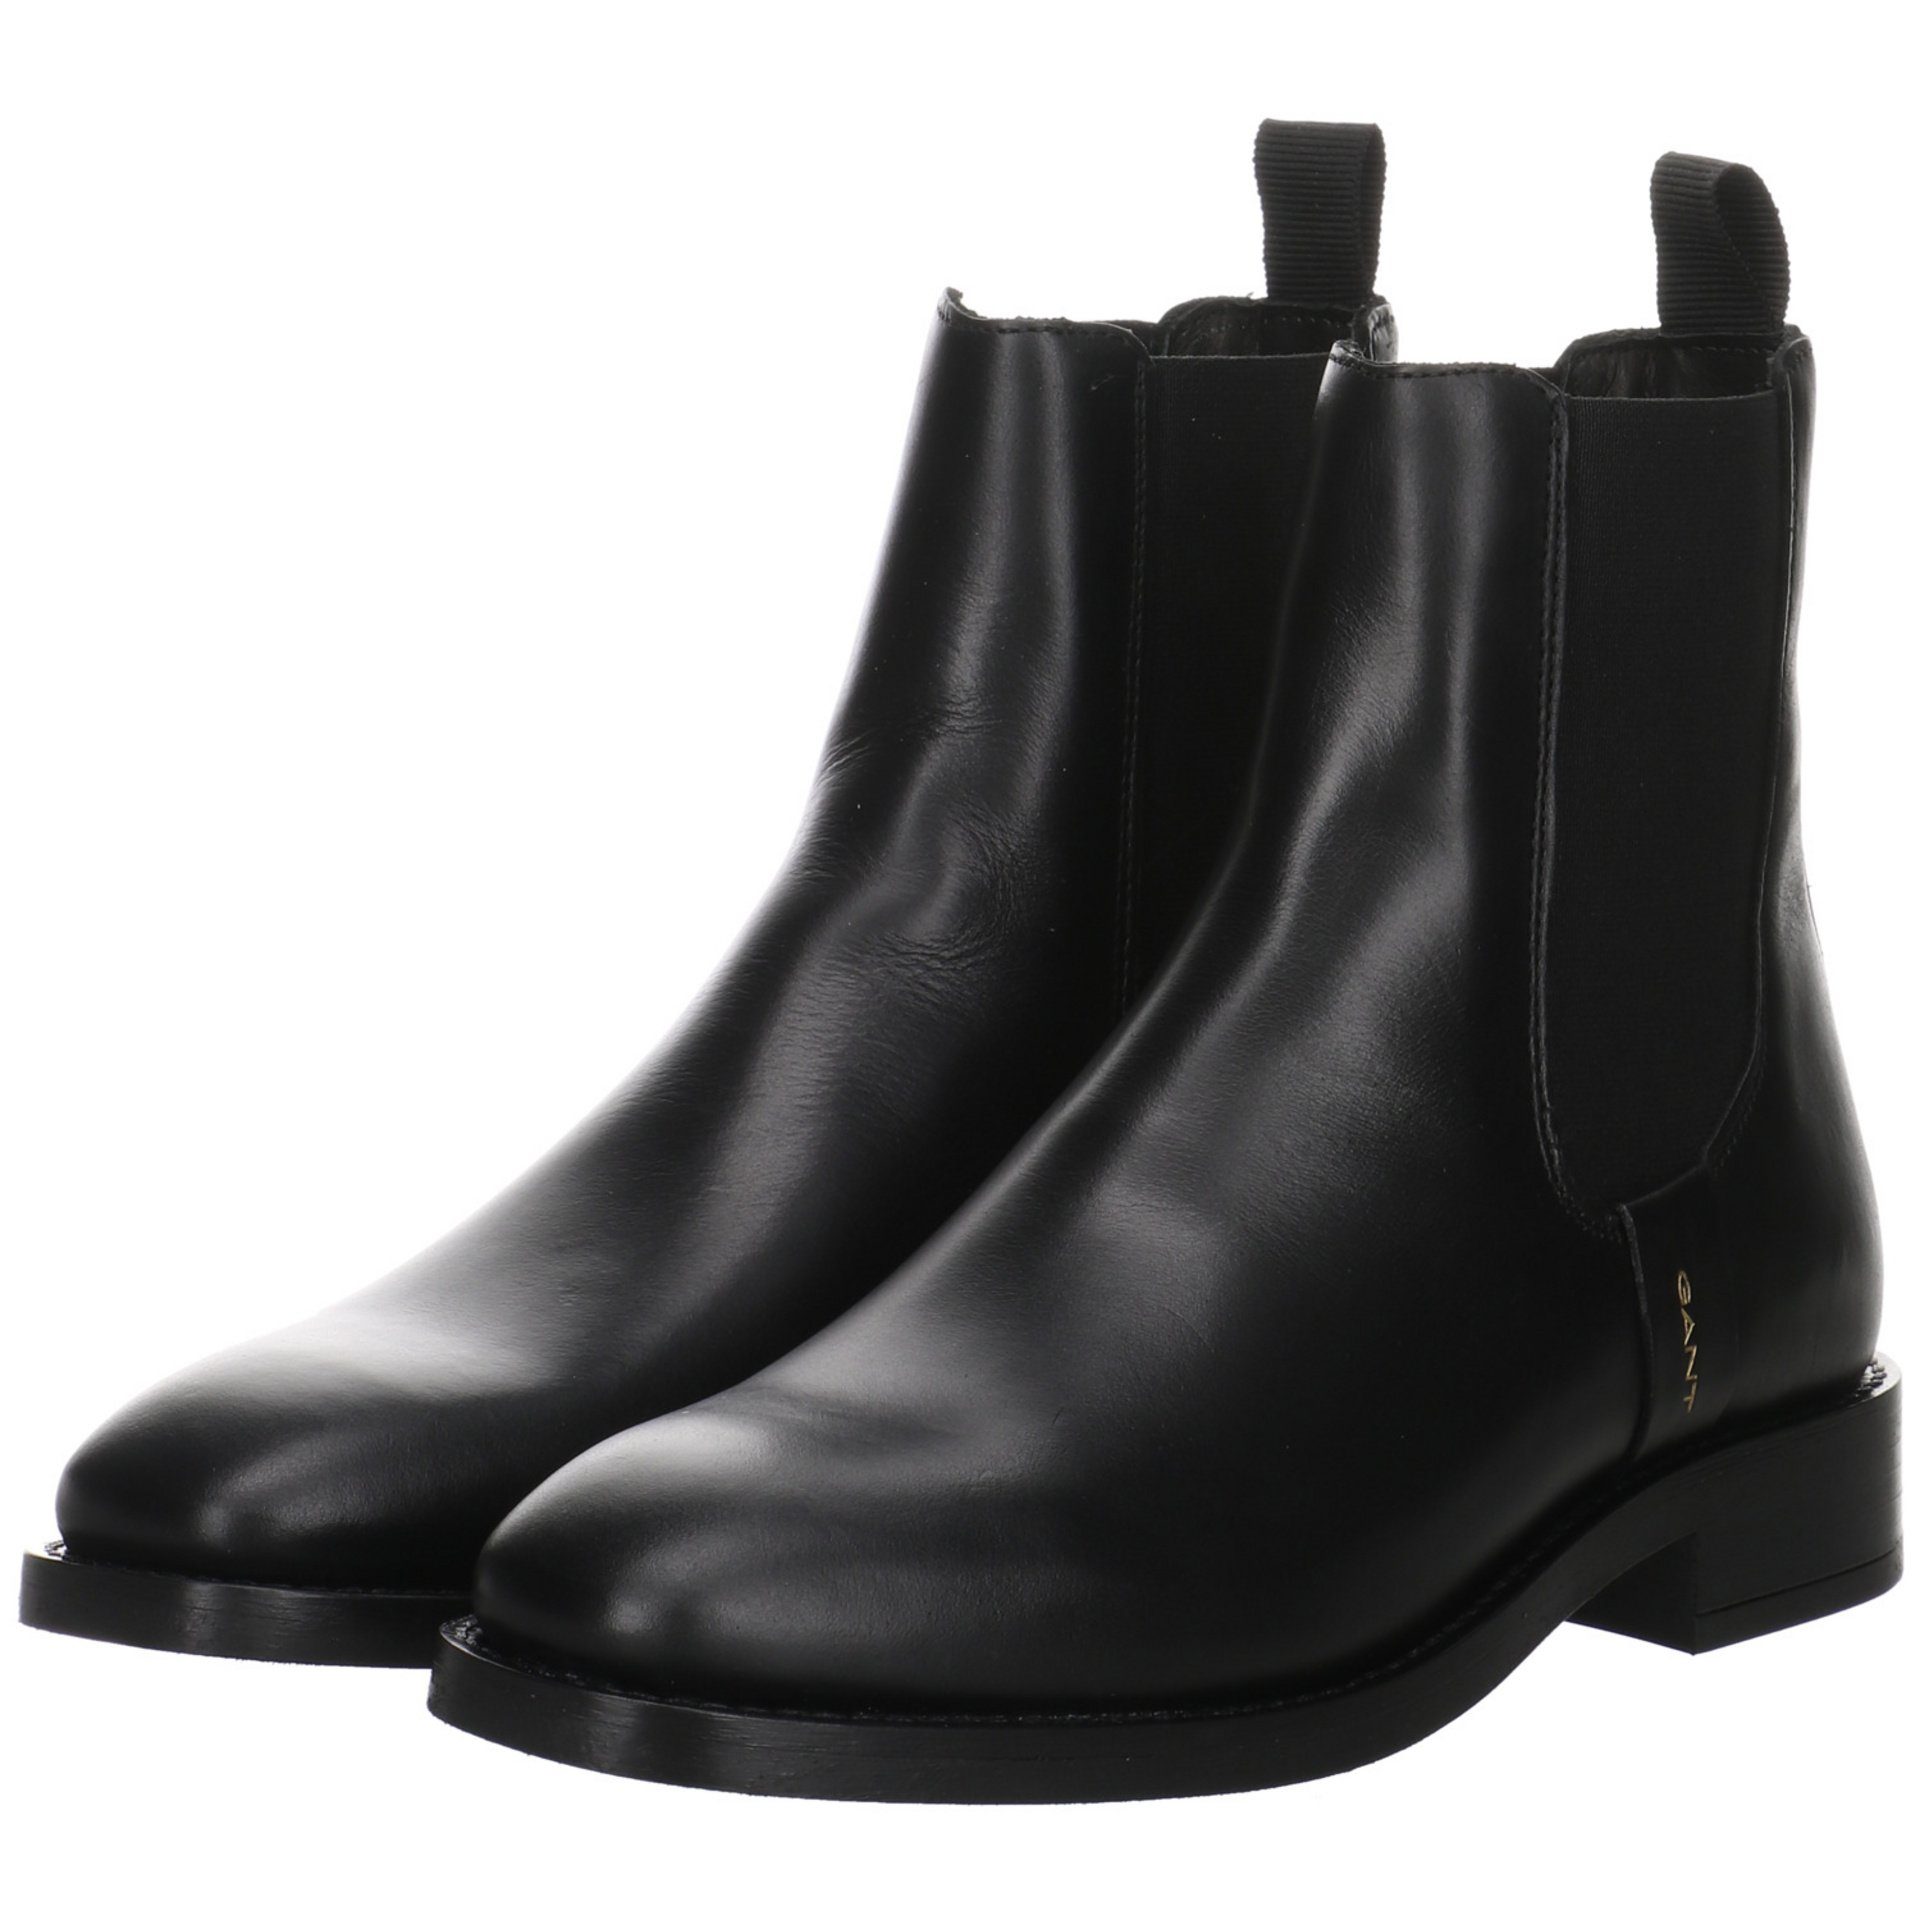 Stiefelette Damen Schuhe FAYY Stiefeletten Leder-/Textilkombination Chelsea Boots Gant